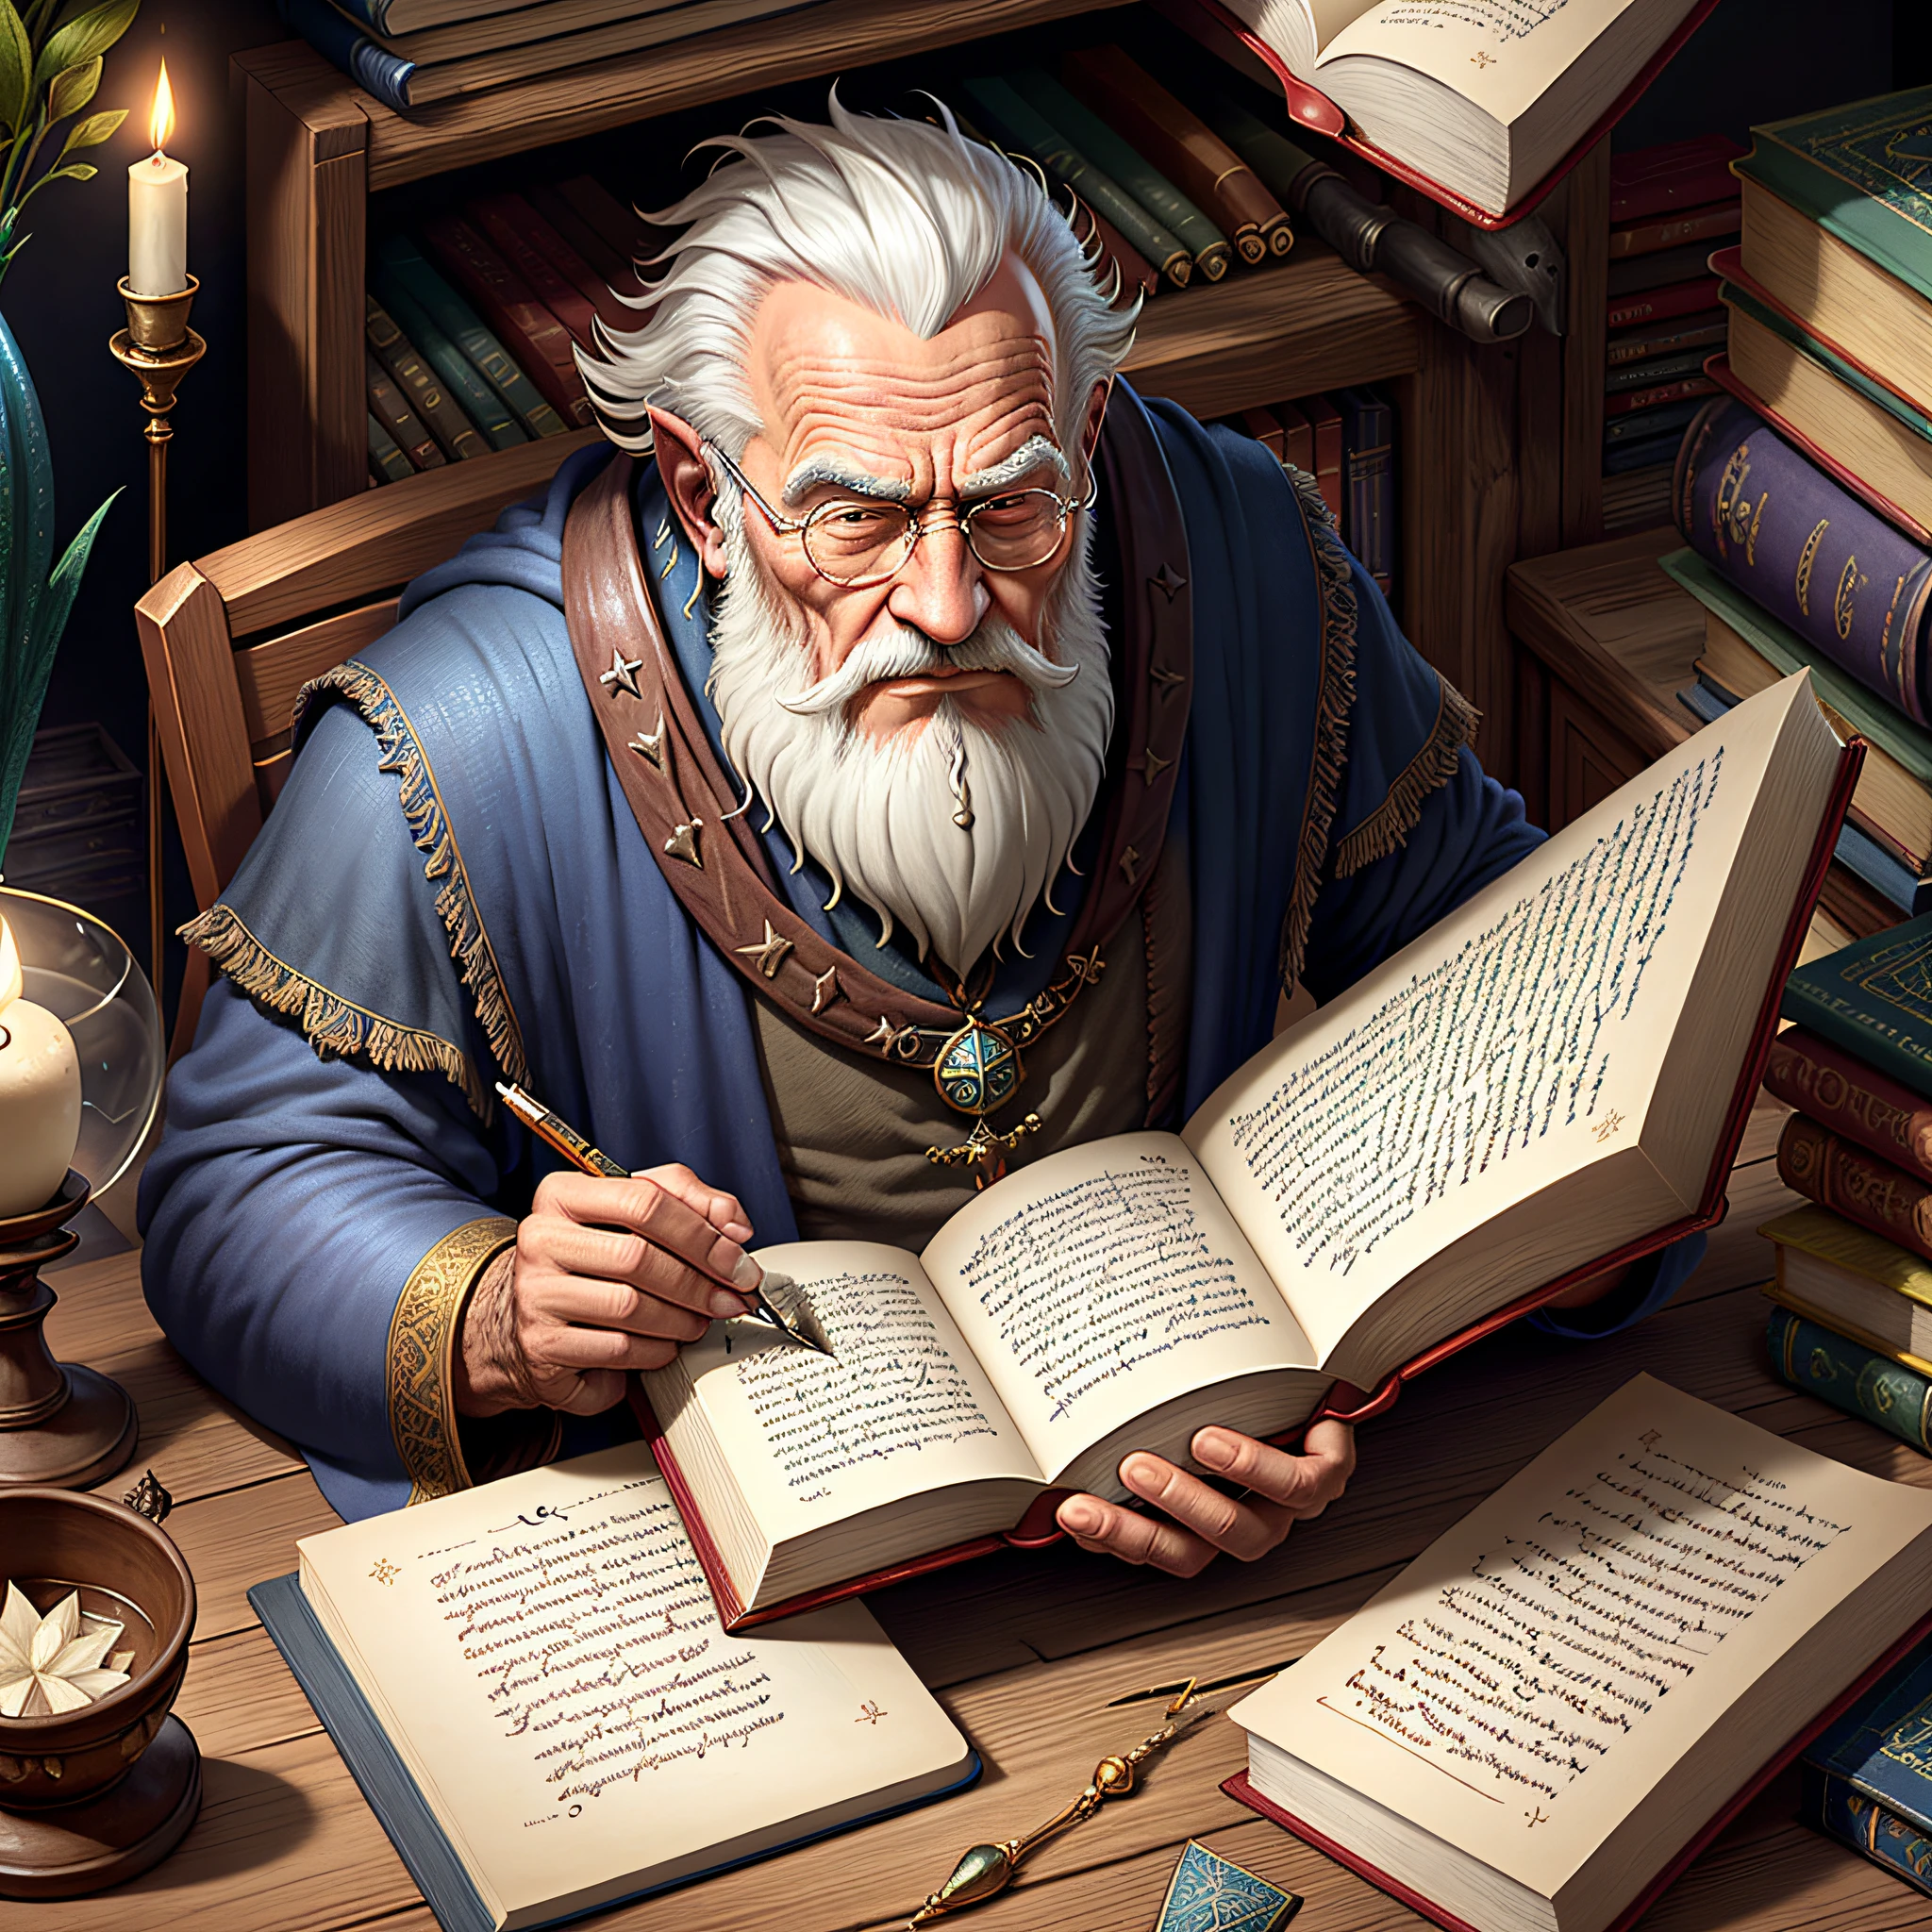 imagen medieval, Fantasía, anciano mago trabajando escribiendo un libro mágico en una biblioteca con mucha tecnología y realismo extremo,